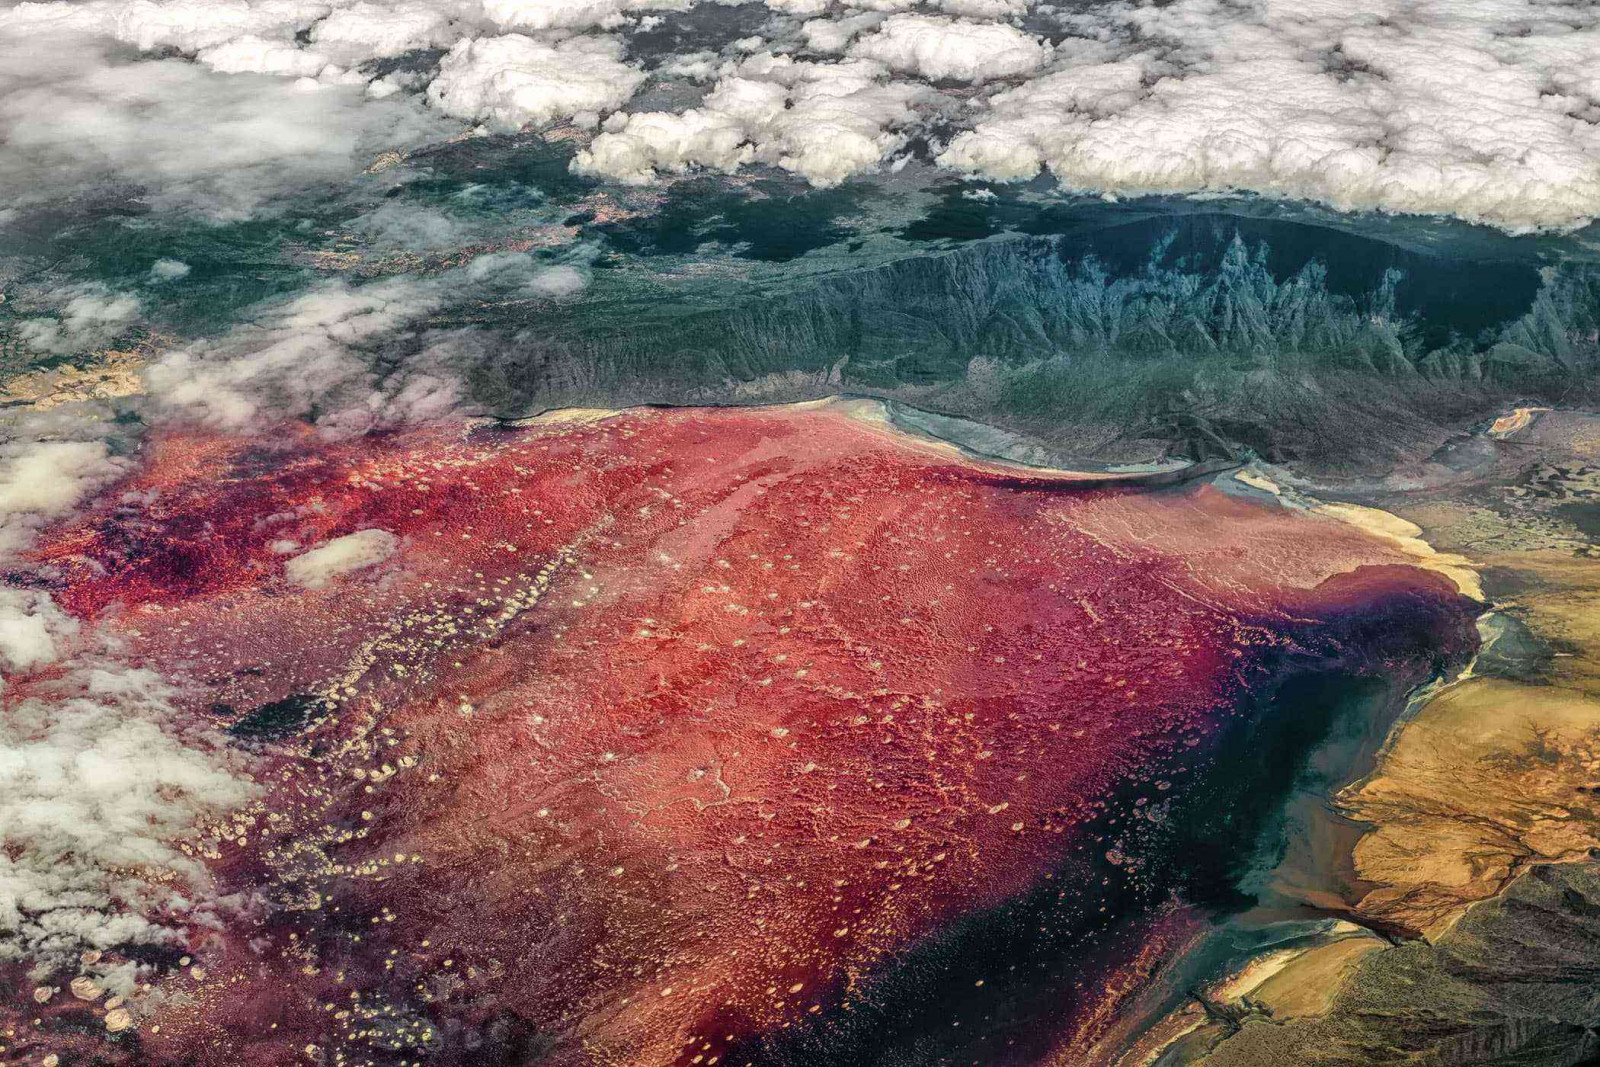 Озеро Натрон в Танзанії в крите кіркою солі, протягом року може змінювати колір. В результаті життєдіяльності мікроорганізмів - галофільних ціанобактерій, вода кілька разів на рік набуває соковиті червонуваті та рожеві відтінки. При підвищенні температури бактерії виділяють пігмент червоного кольору, фарбуючи озеро.